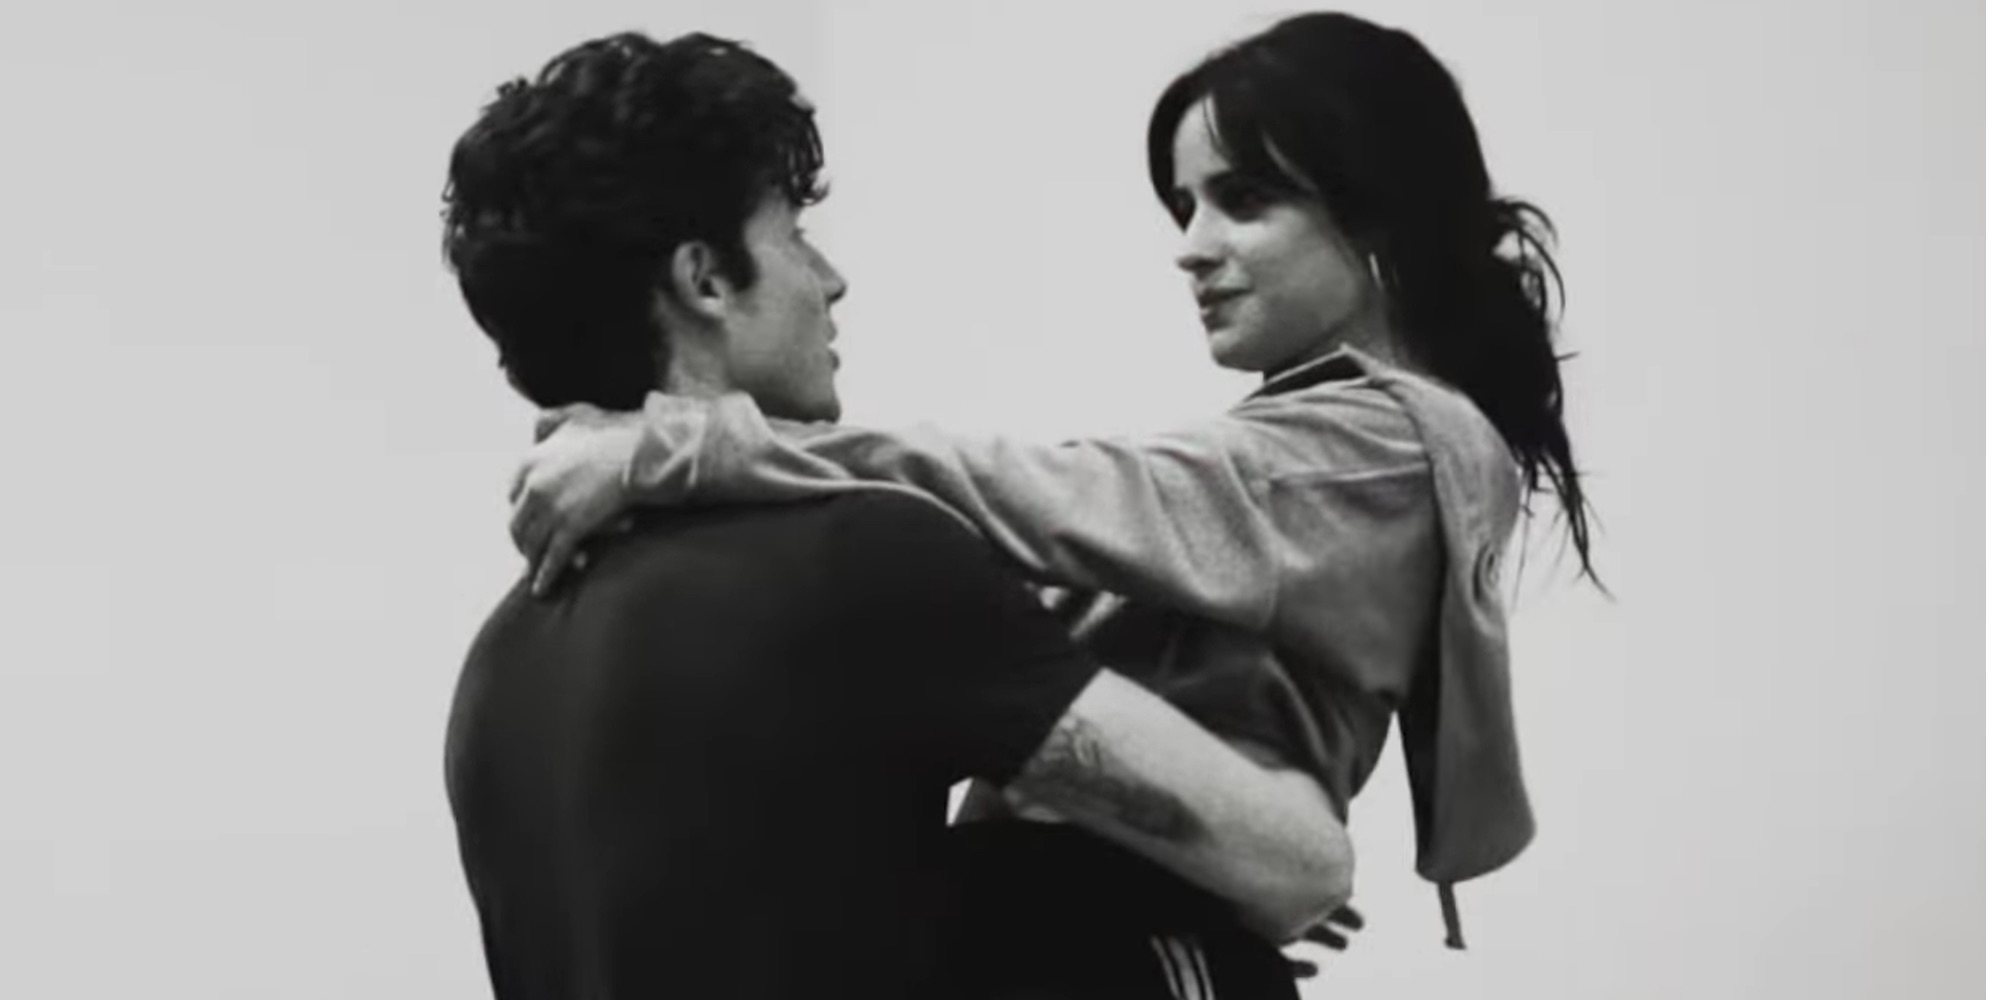 El apasionado vídeo de Camila Cabello y Shawn Mendes ensayando el baile de su canción 'Señorita'